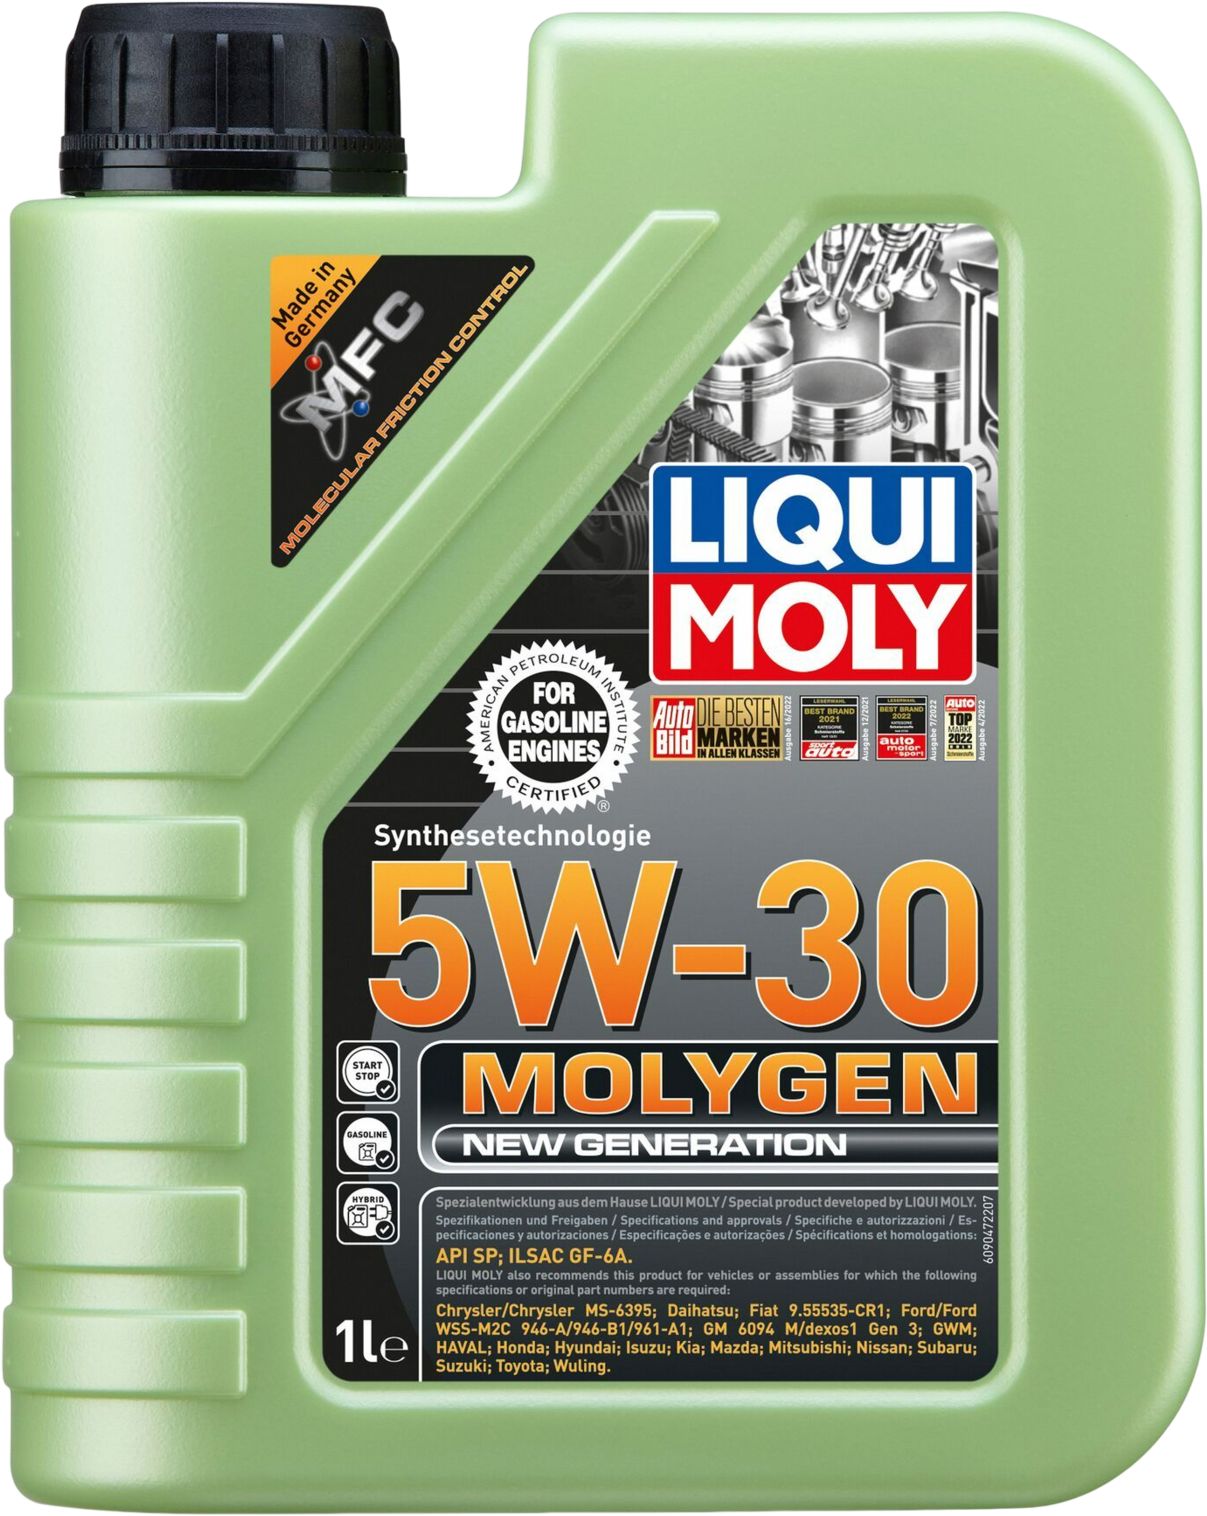 Liqui Moly Molygen New Generation 5W-30, 1 lt